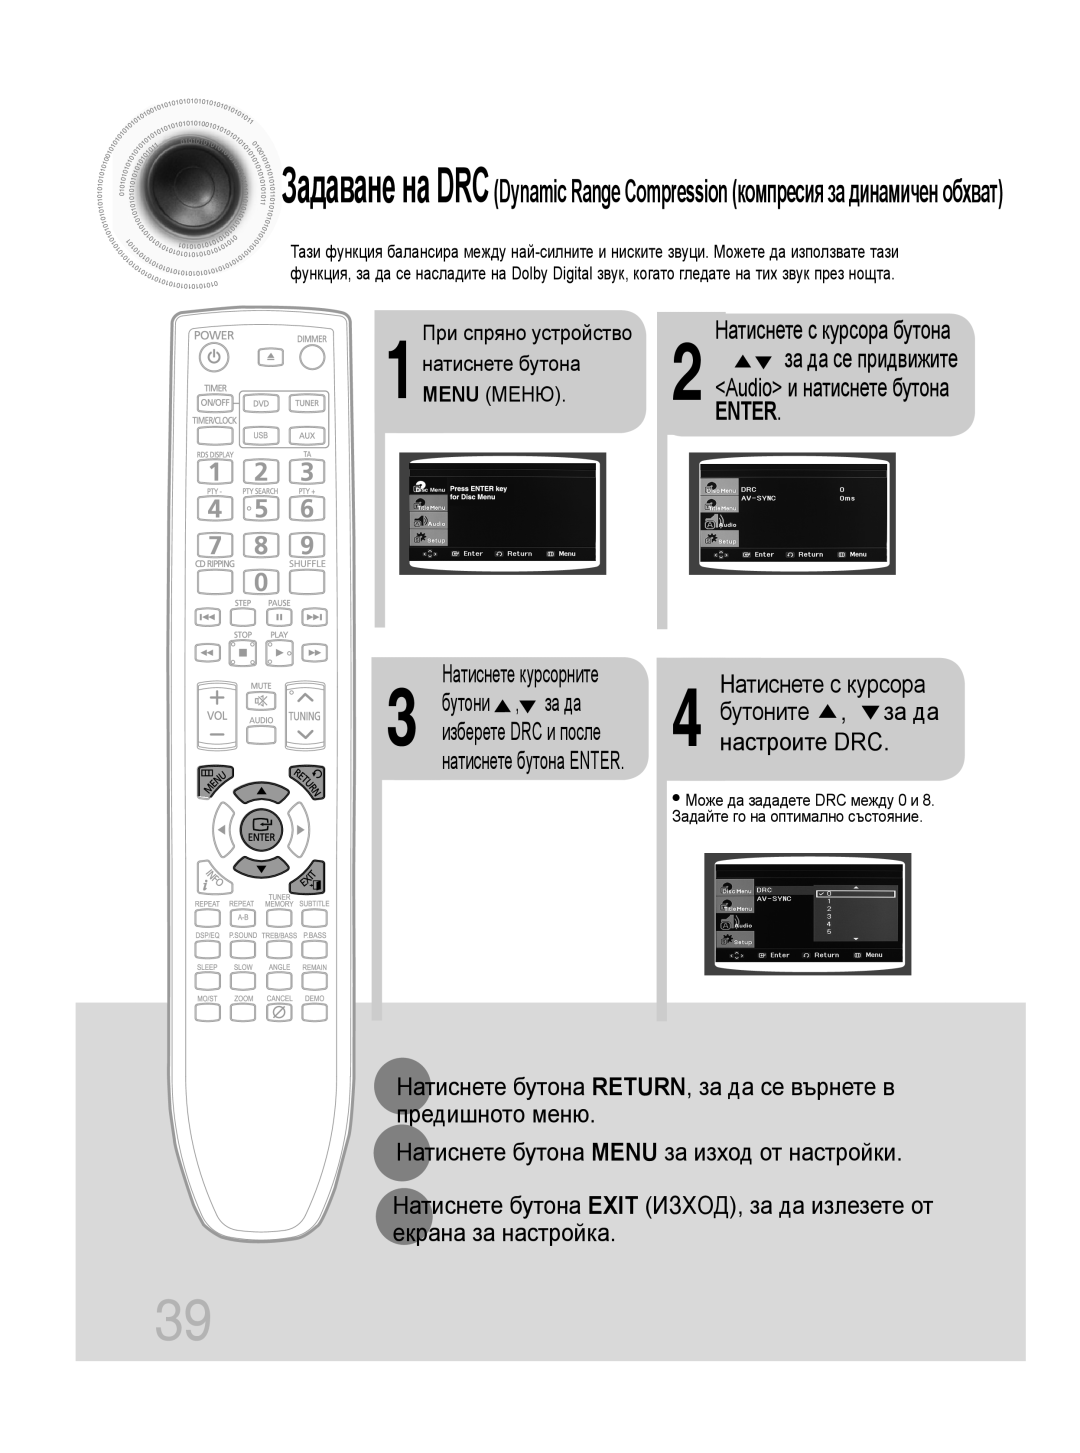 Samsung MM-C330D/EDC Enter, 4 настроите DRC, за да се придвижите, бутоните, Натиснете бутона MENU за изход от настройки 